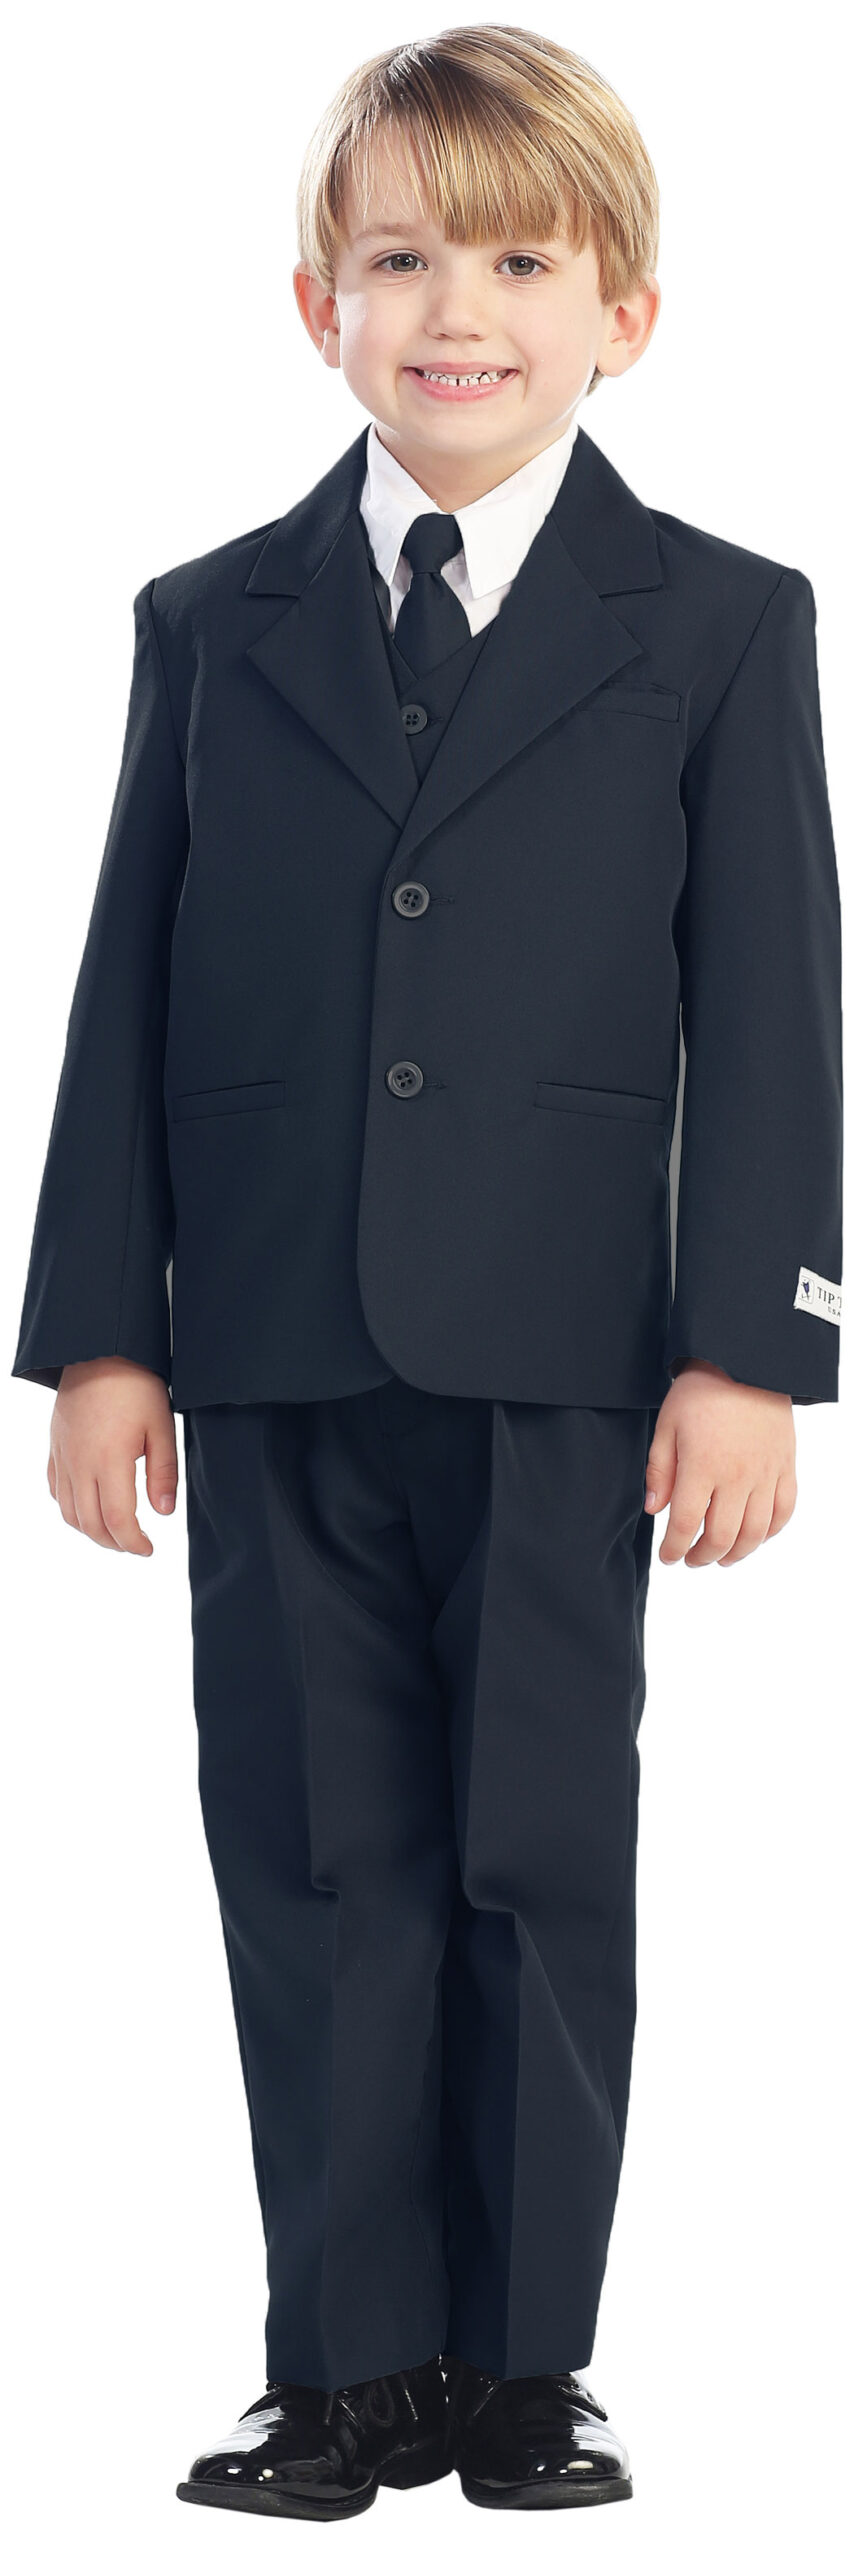 Avery Hill 5-Piece Boy's 2-Button Dress Suit Full-Back Vest - Navy Blue Size 6